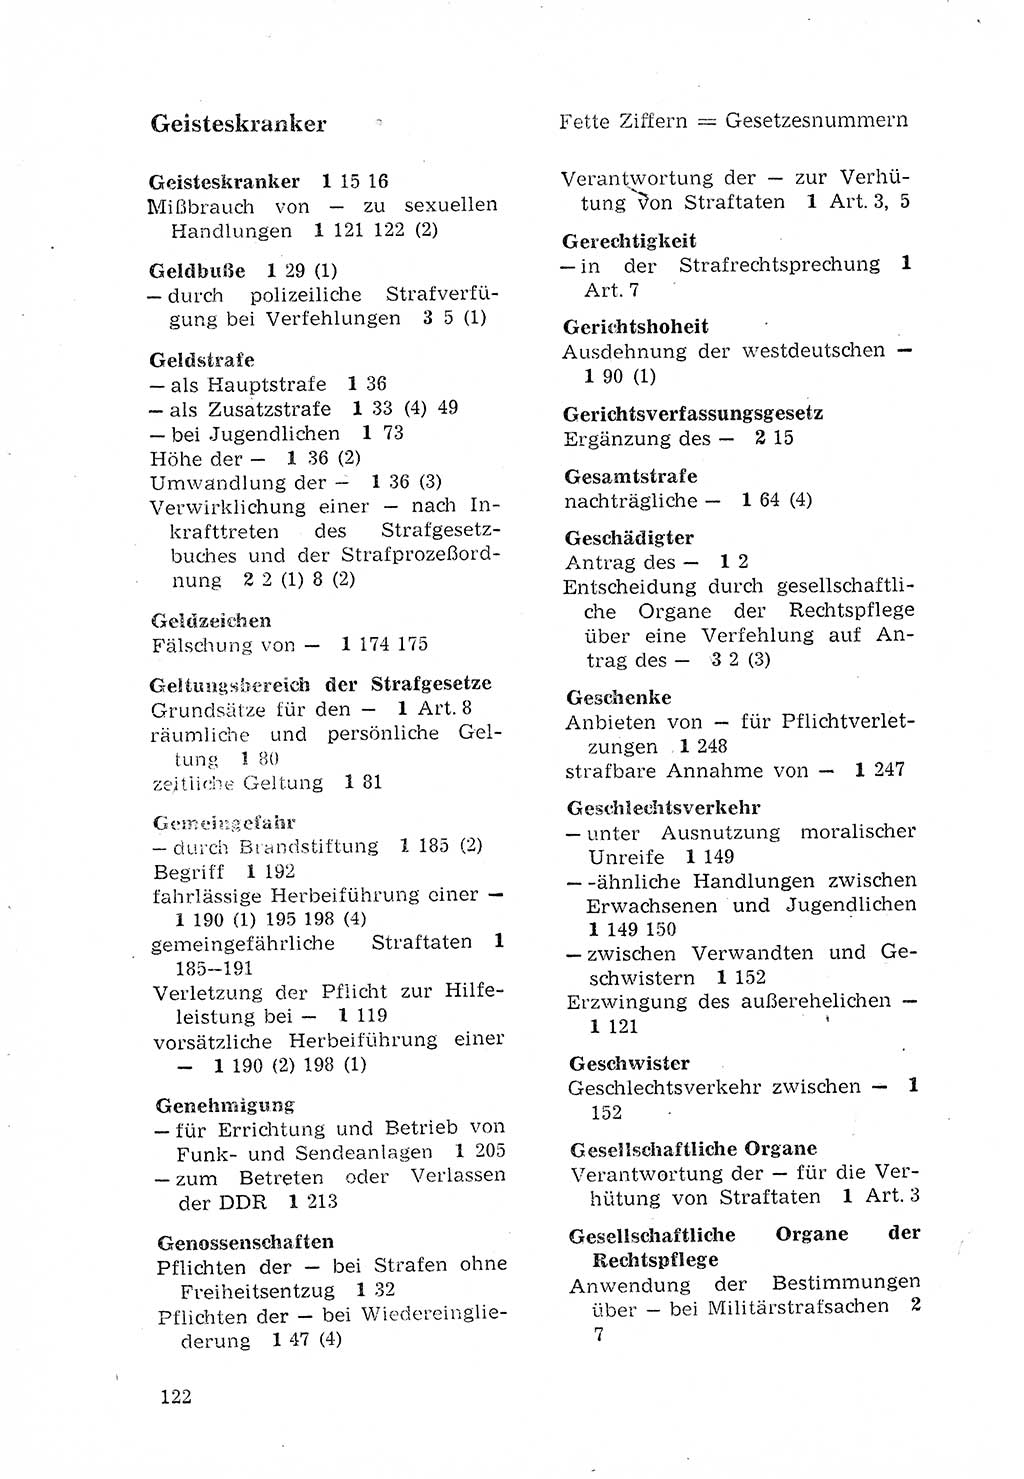 Strafgesetzbuch (StGB) der Deutschen Demokratischen Republik (DDR) 1968, Seite 122 (StGB DDR 1968, S. 122)